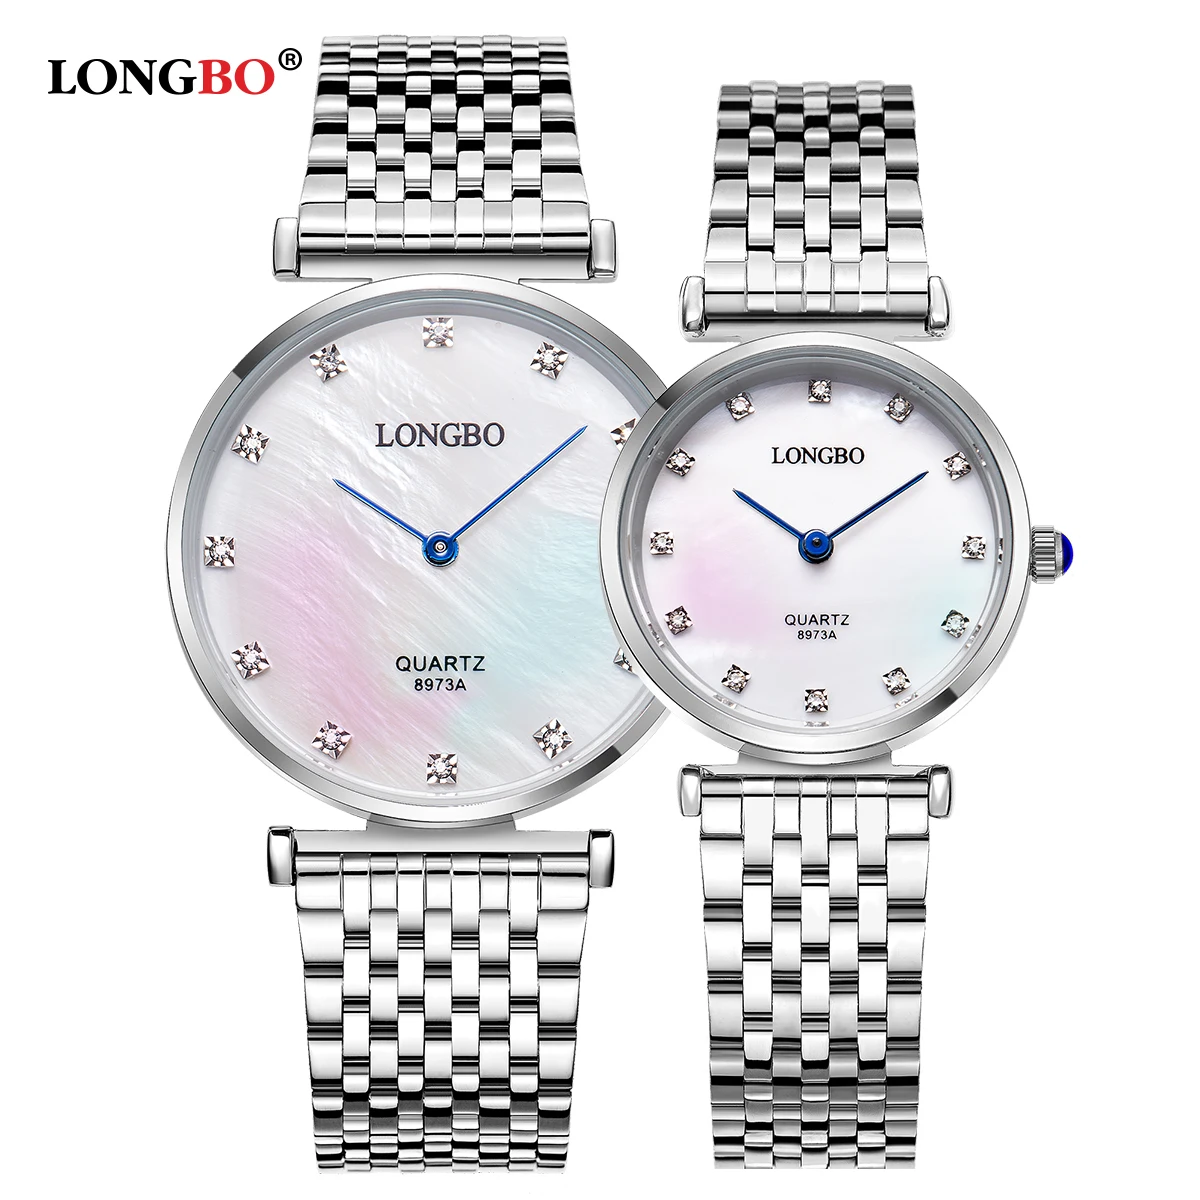 2019 Moda Longbo De Luxo Brandclassic Casais Relógio Estilo De Negócios Amantes Homens Mulheres Relógio De Quartzo Encantos De Pulso Analógico Relógios